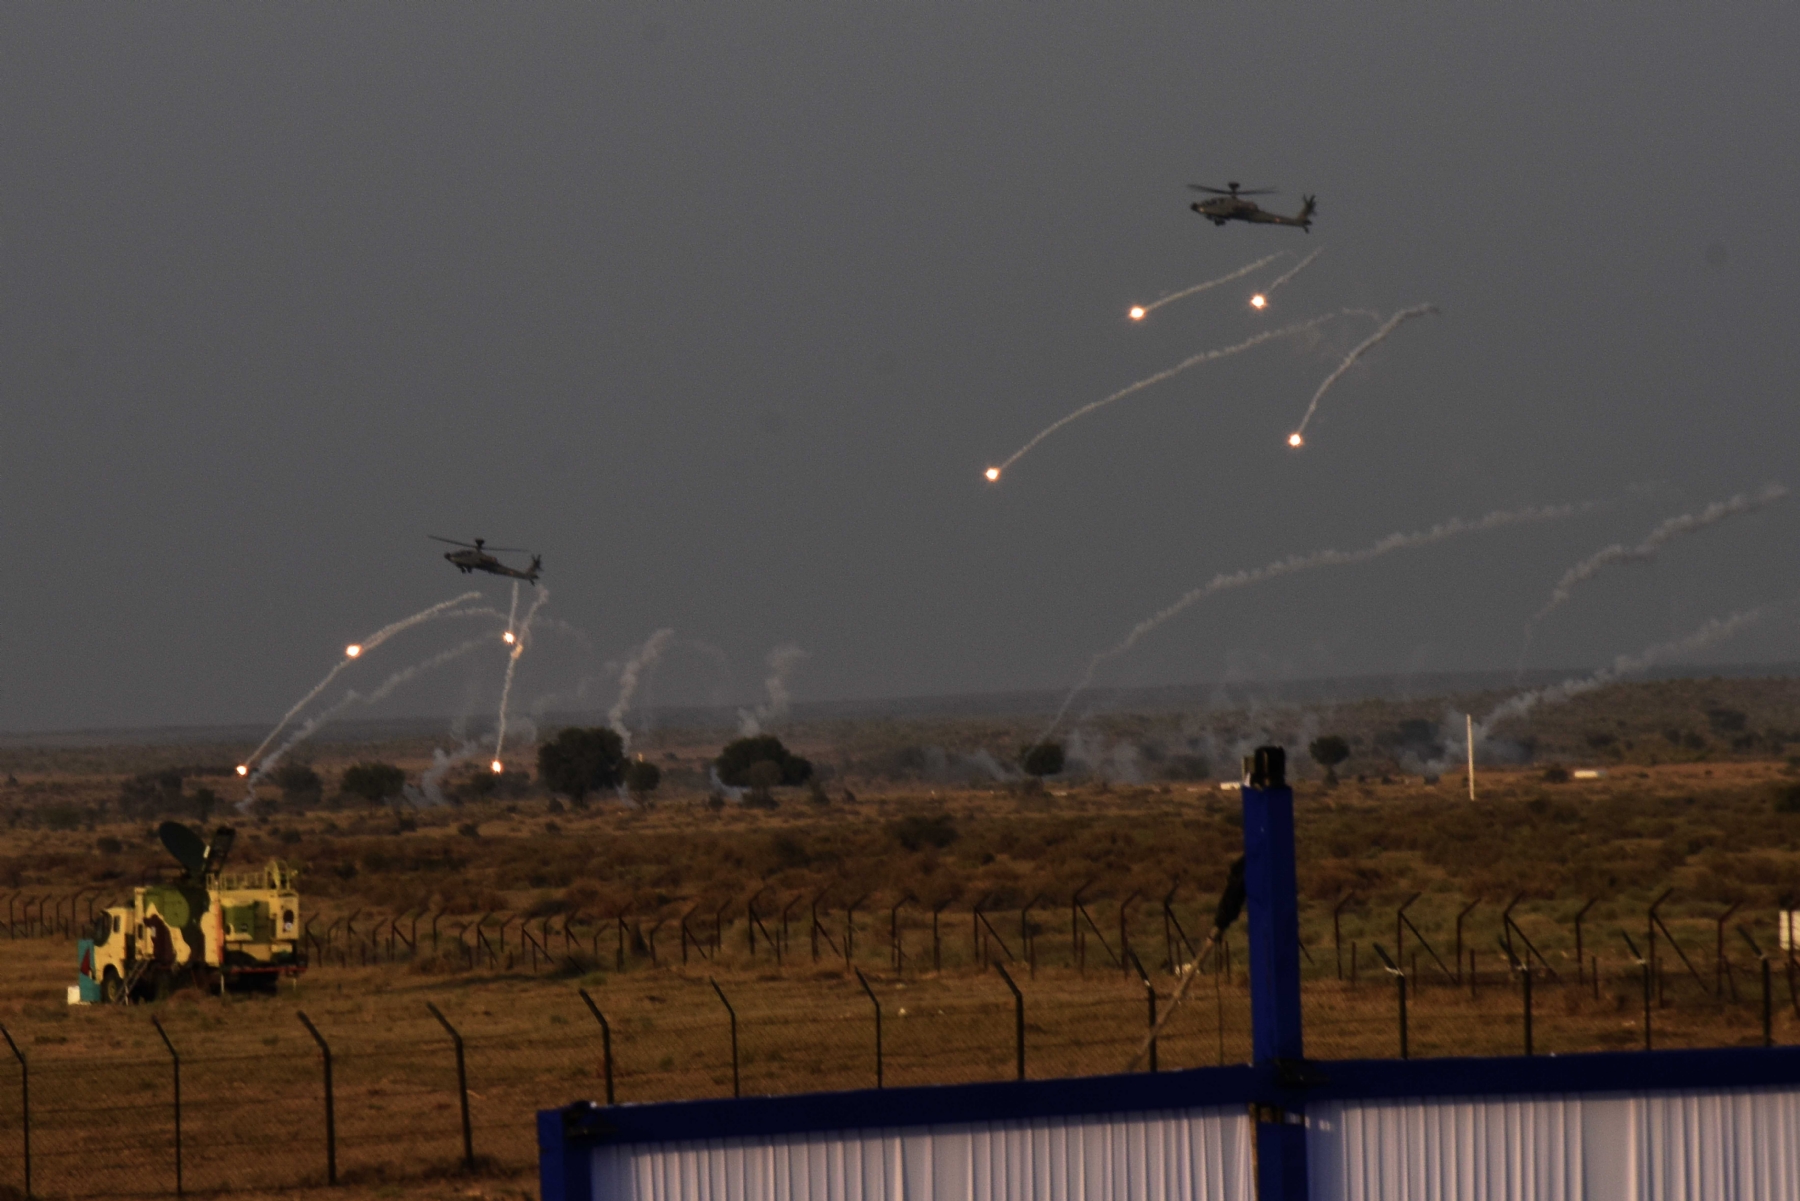 भारतीय वायु सेना ने जैसलमेर के पास पोखरण एयर टू ग्राउंड रेंज में अभ्यास वायु शक्ति-2024 का वायु शक्ति अभ्यास के द्वारा राफेल-मिग से लेकर तेजस तक ने सीमा के पास दुश्मनों के यूं उड़ाए होश।